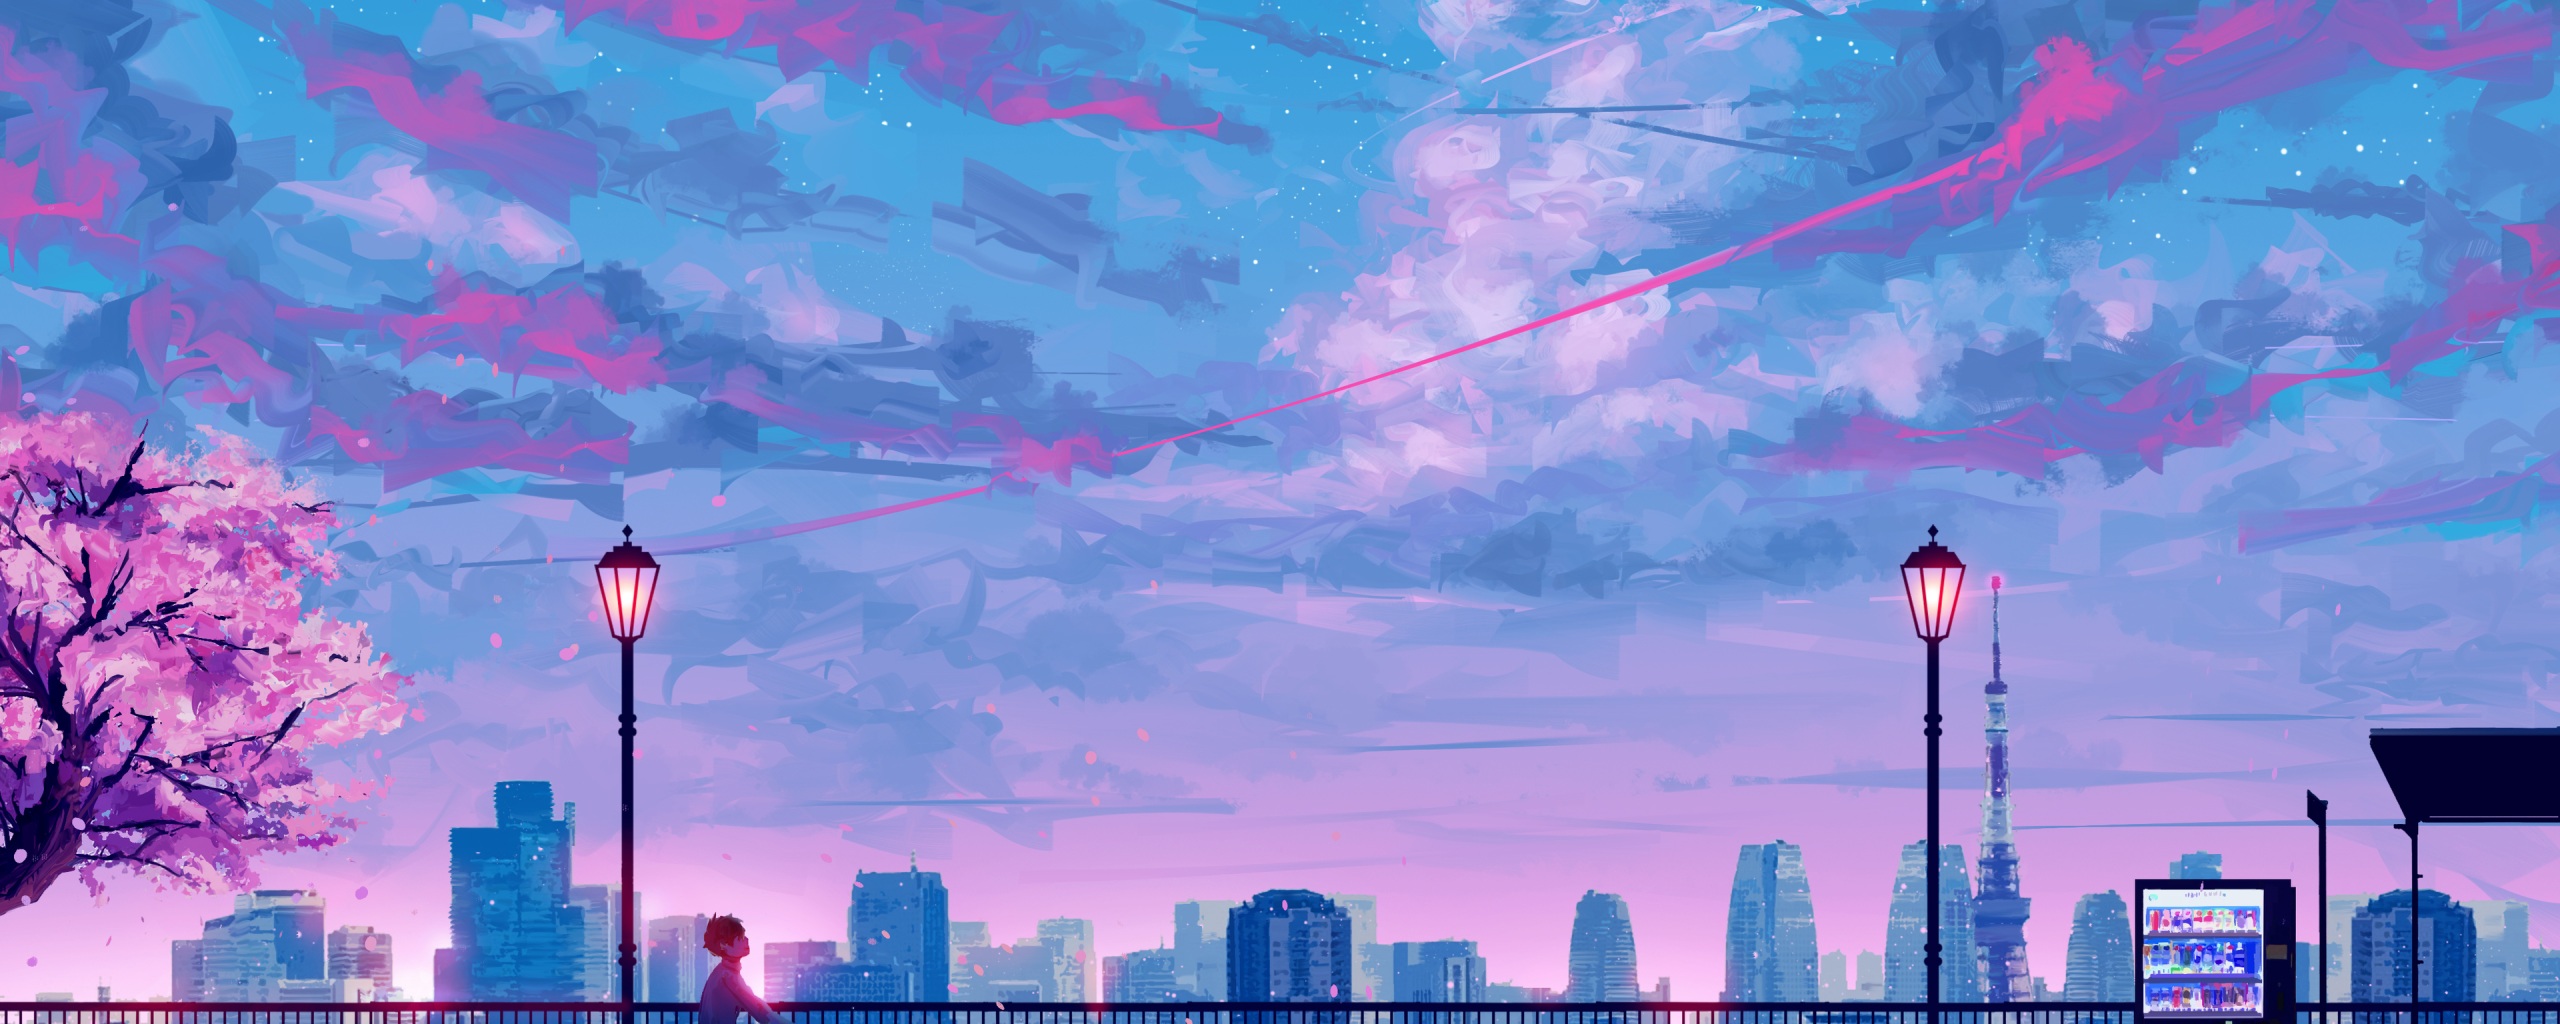 Anime Cityscape Landscape Scenery 4k